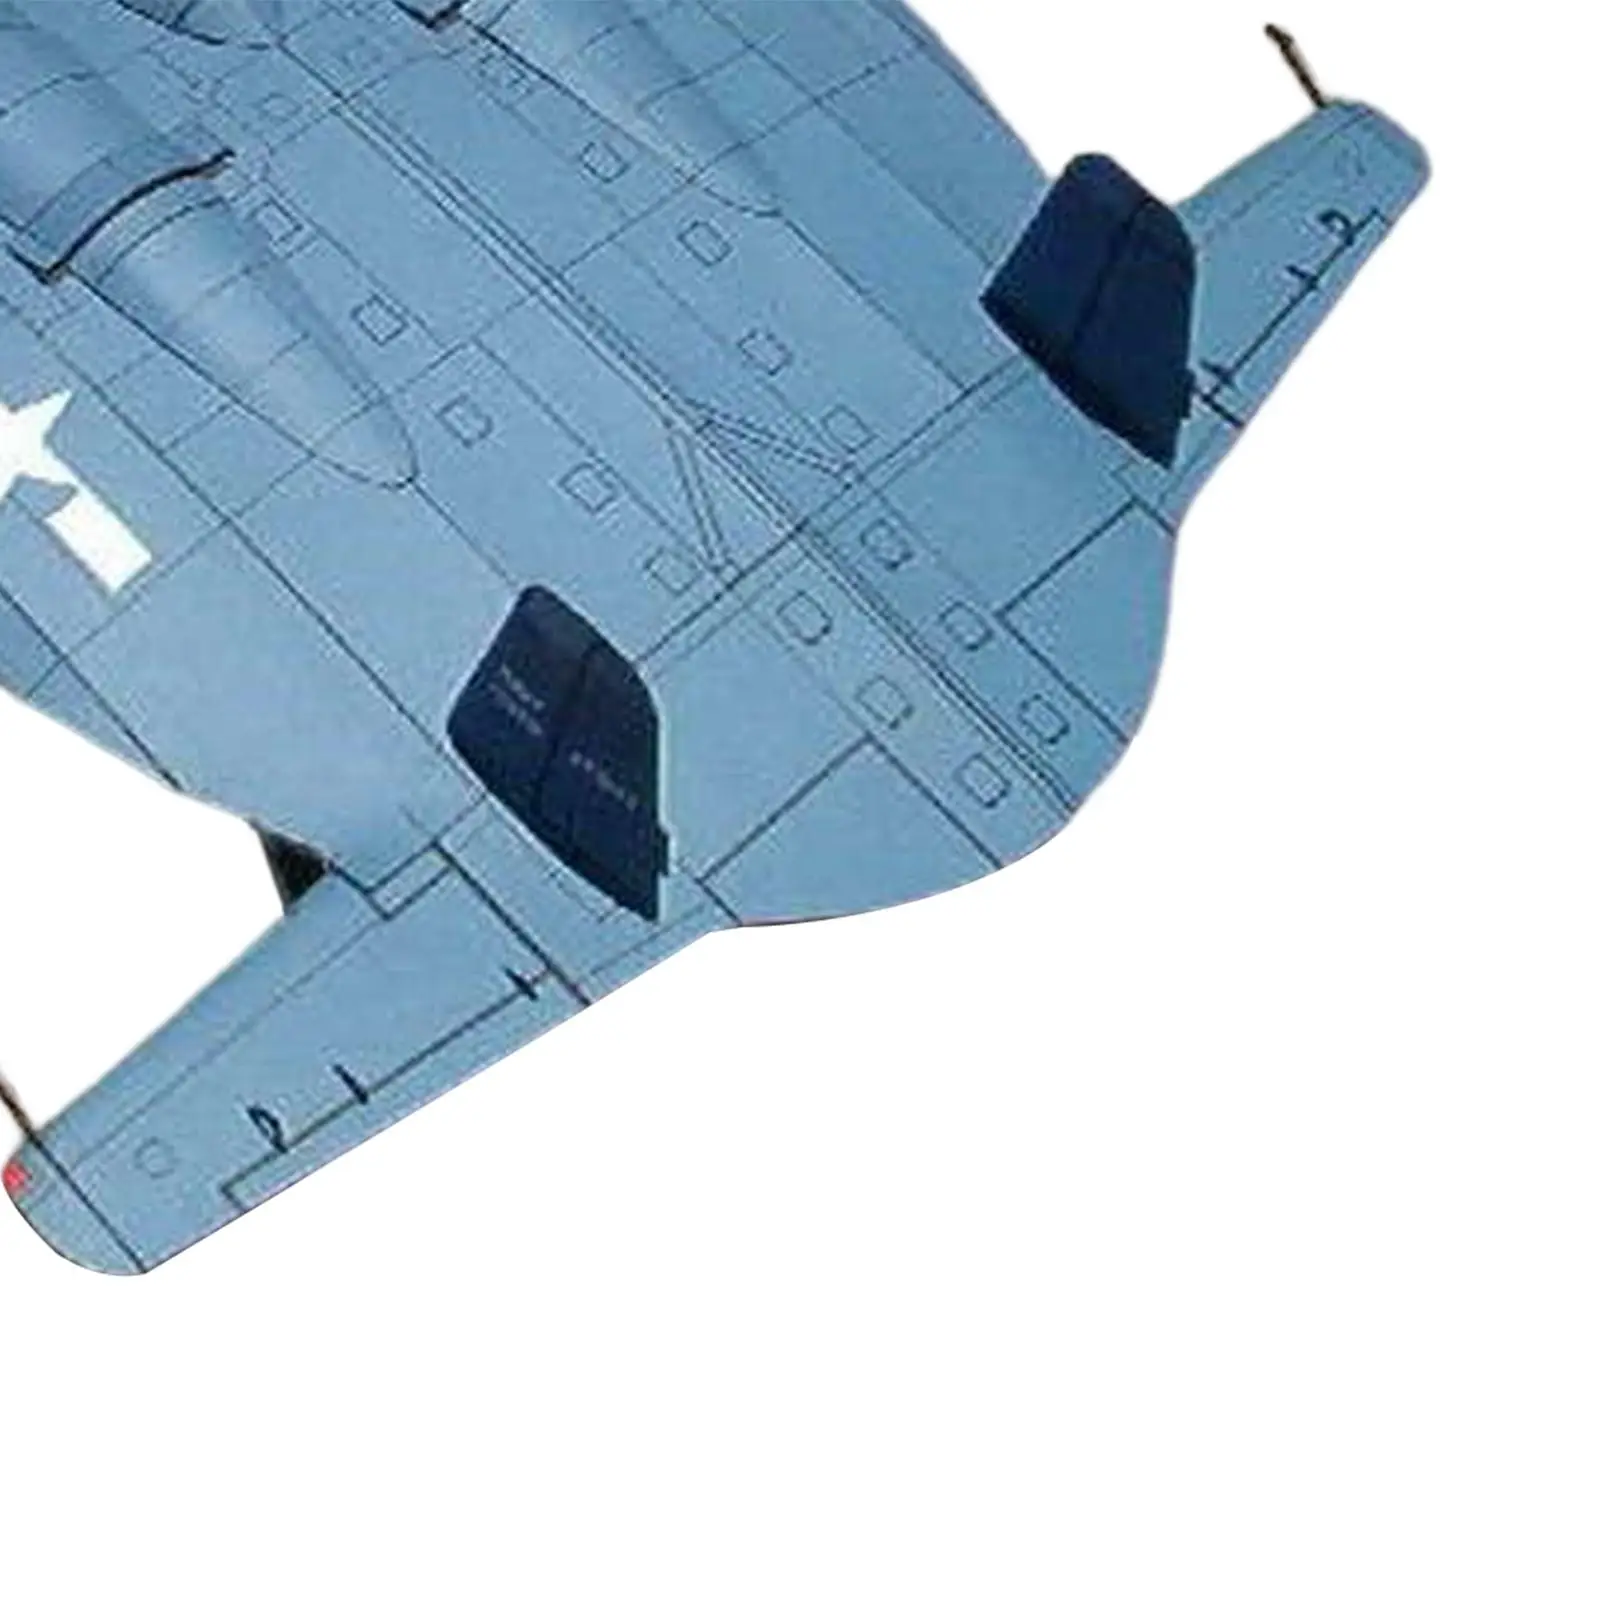 Assemble Air Aviation aircraft Paper Model Miniature 3D Fighter Model Toy for Shelf Desktop Home Decor Teens Souvenir